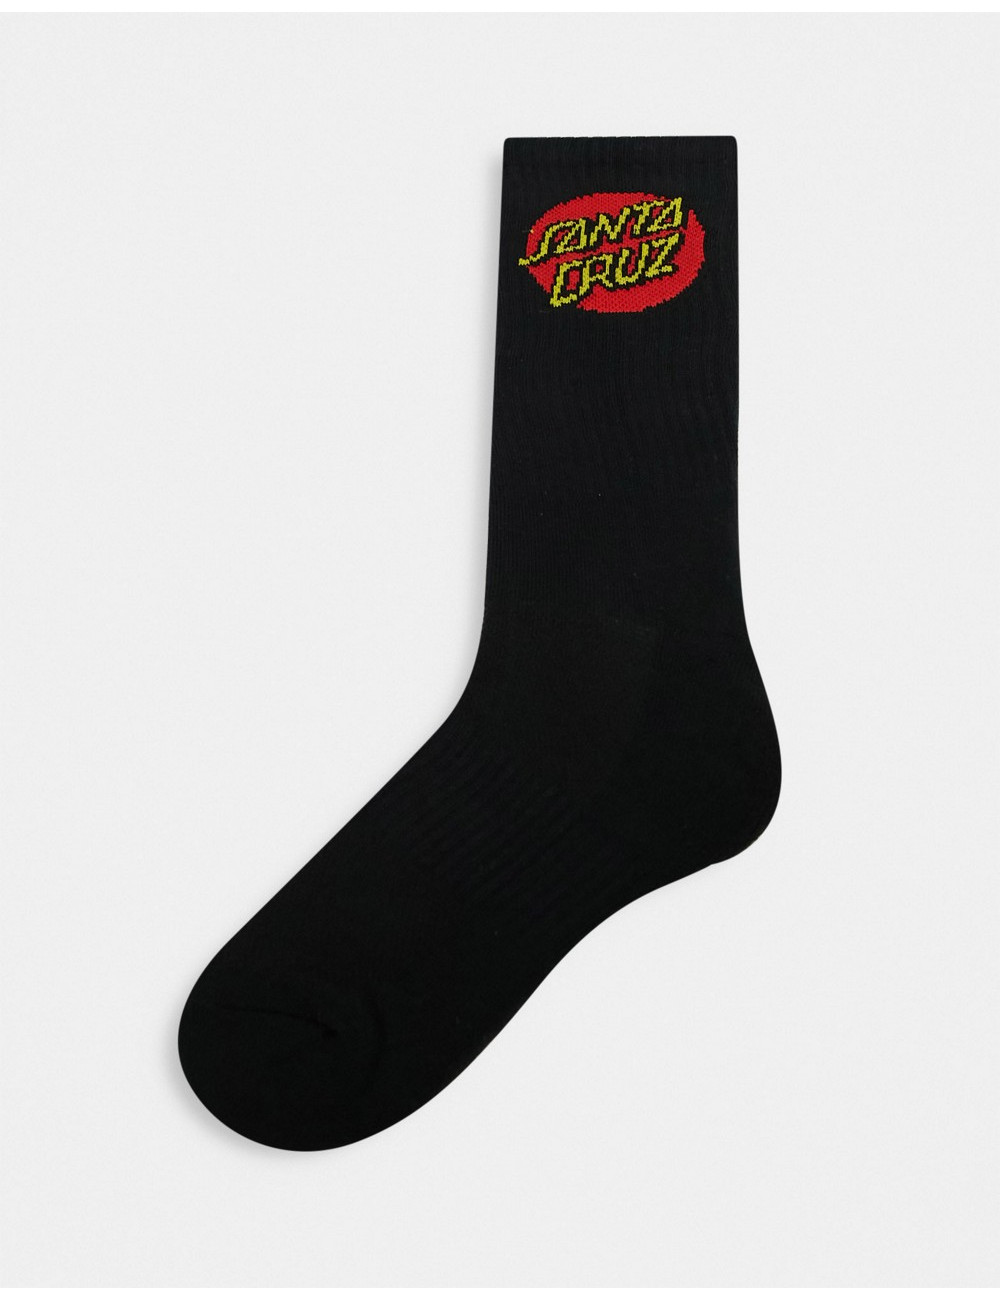 Santa Cruz dot socks in black